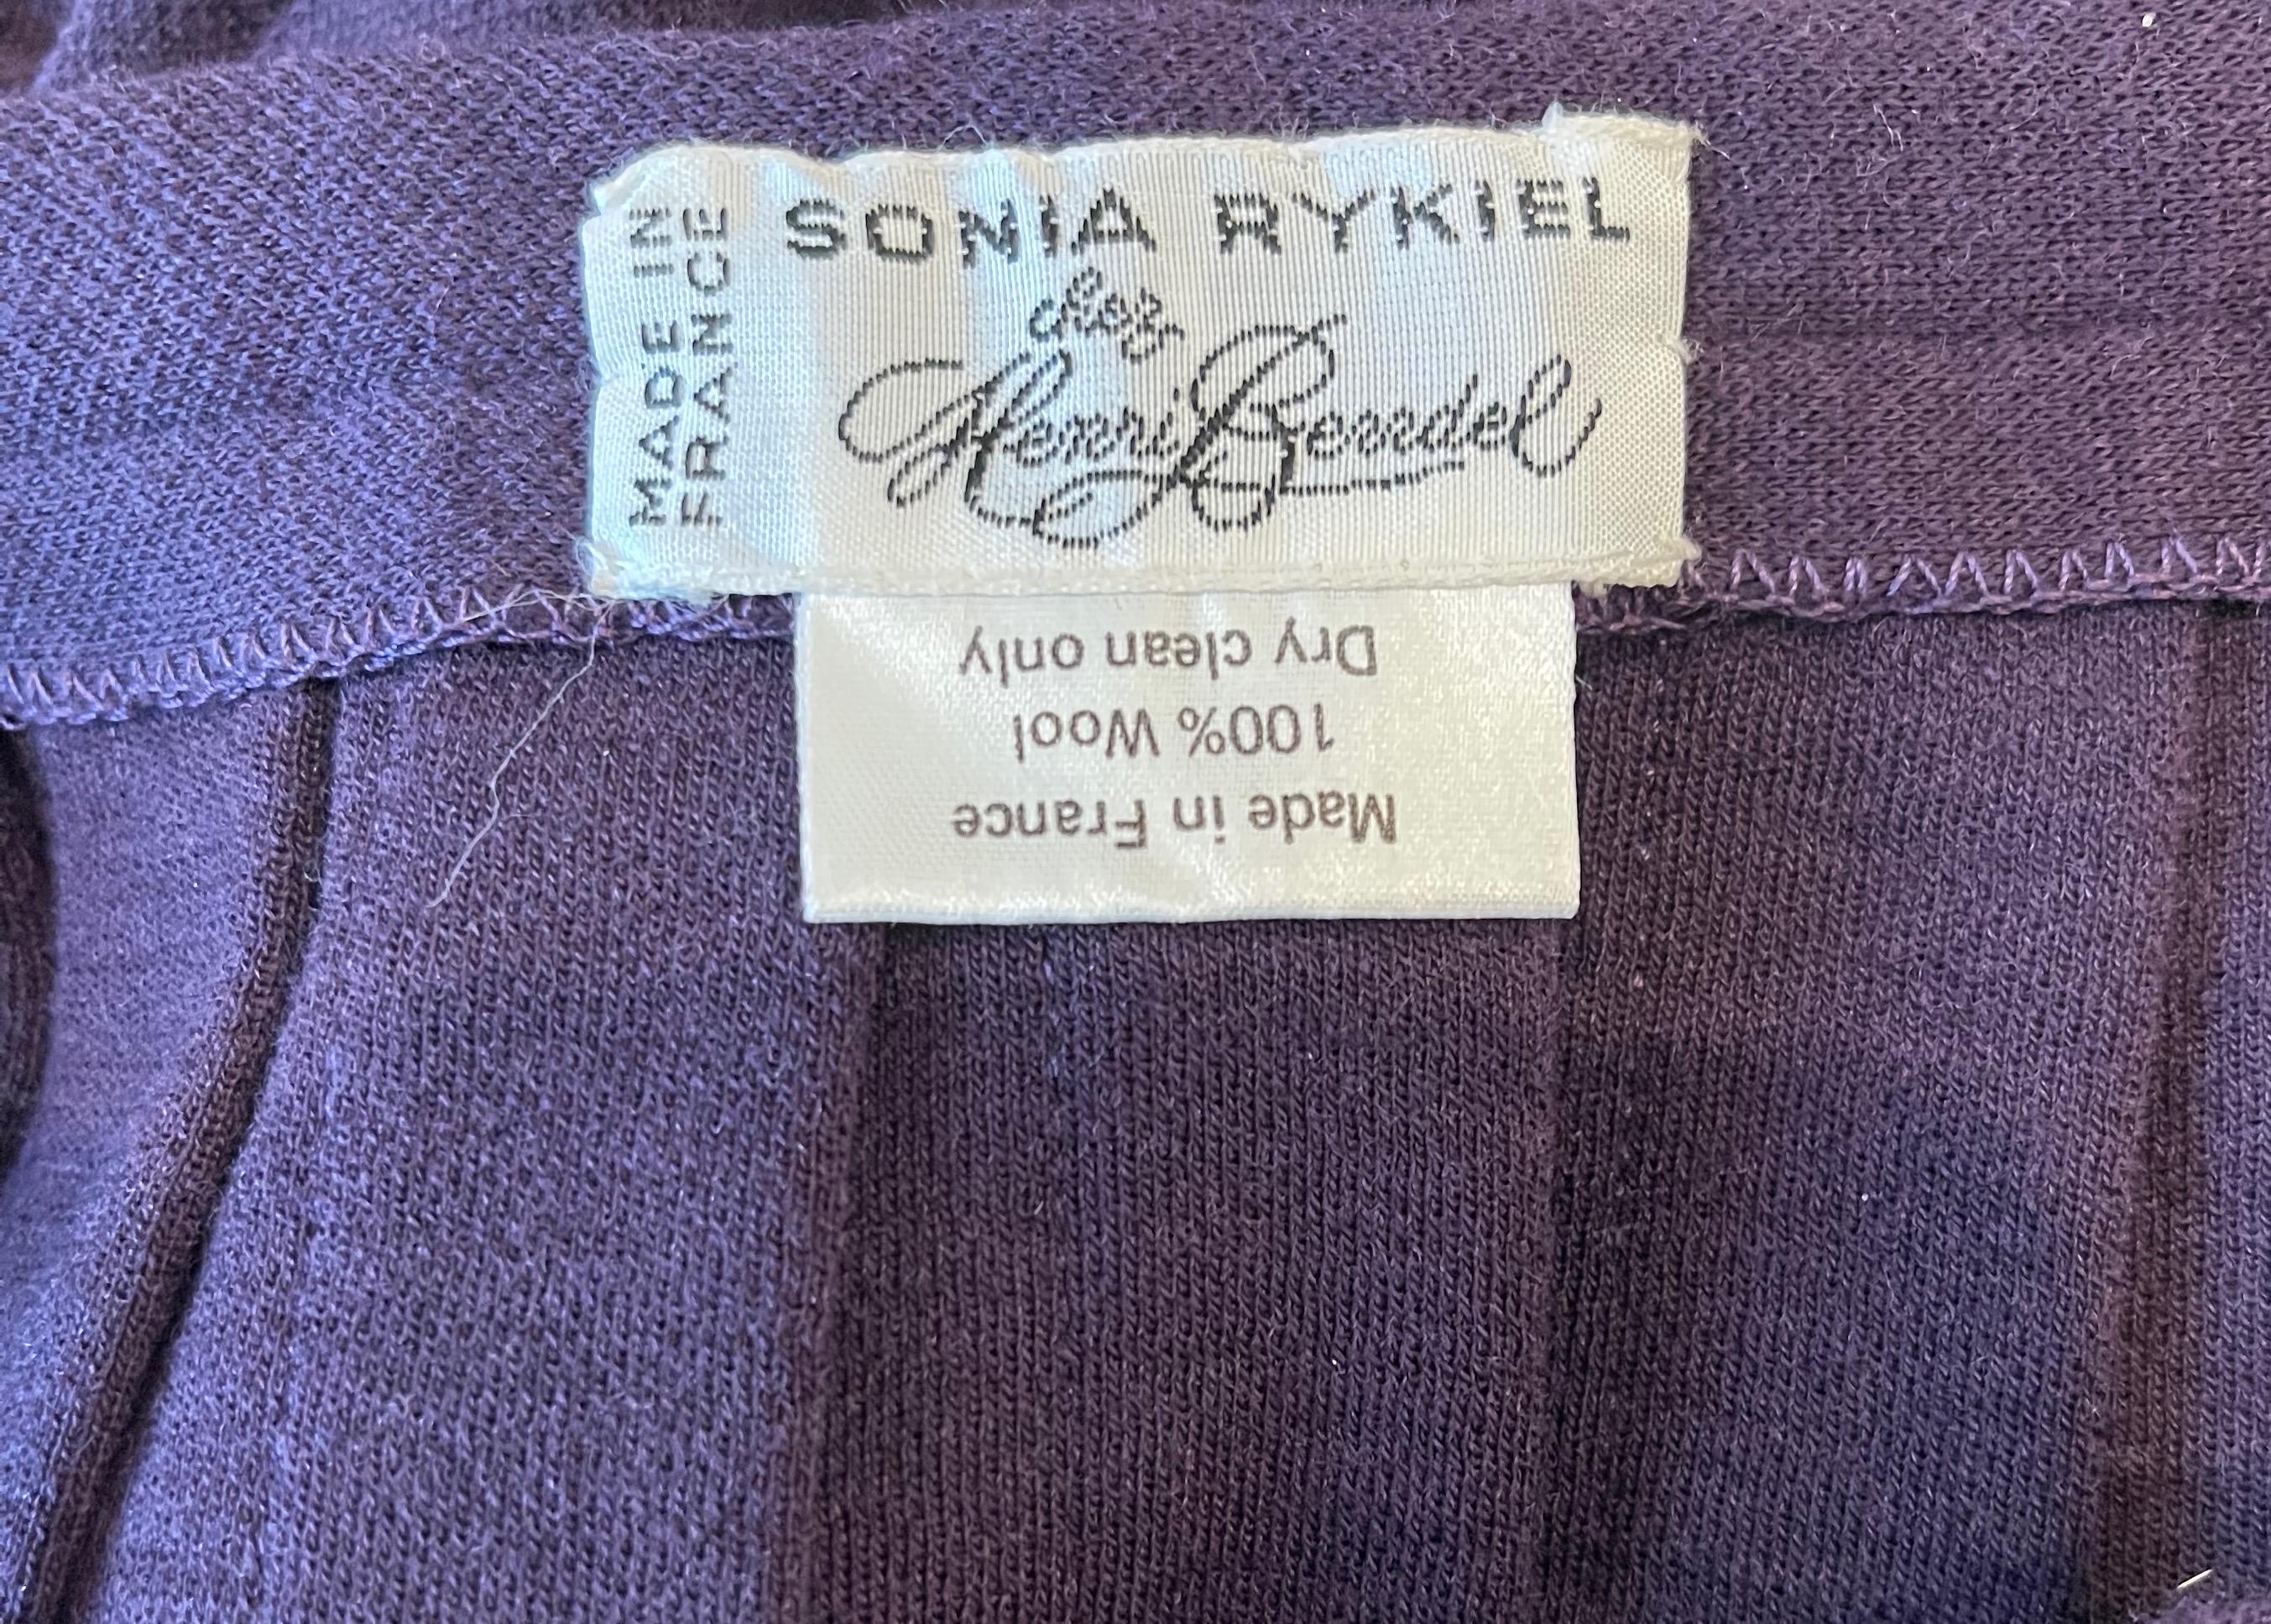 Violet Sonia Rykiel - Jupe midi en laine plissée violette à motif aubergine, vintage, années 1970 en vente